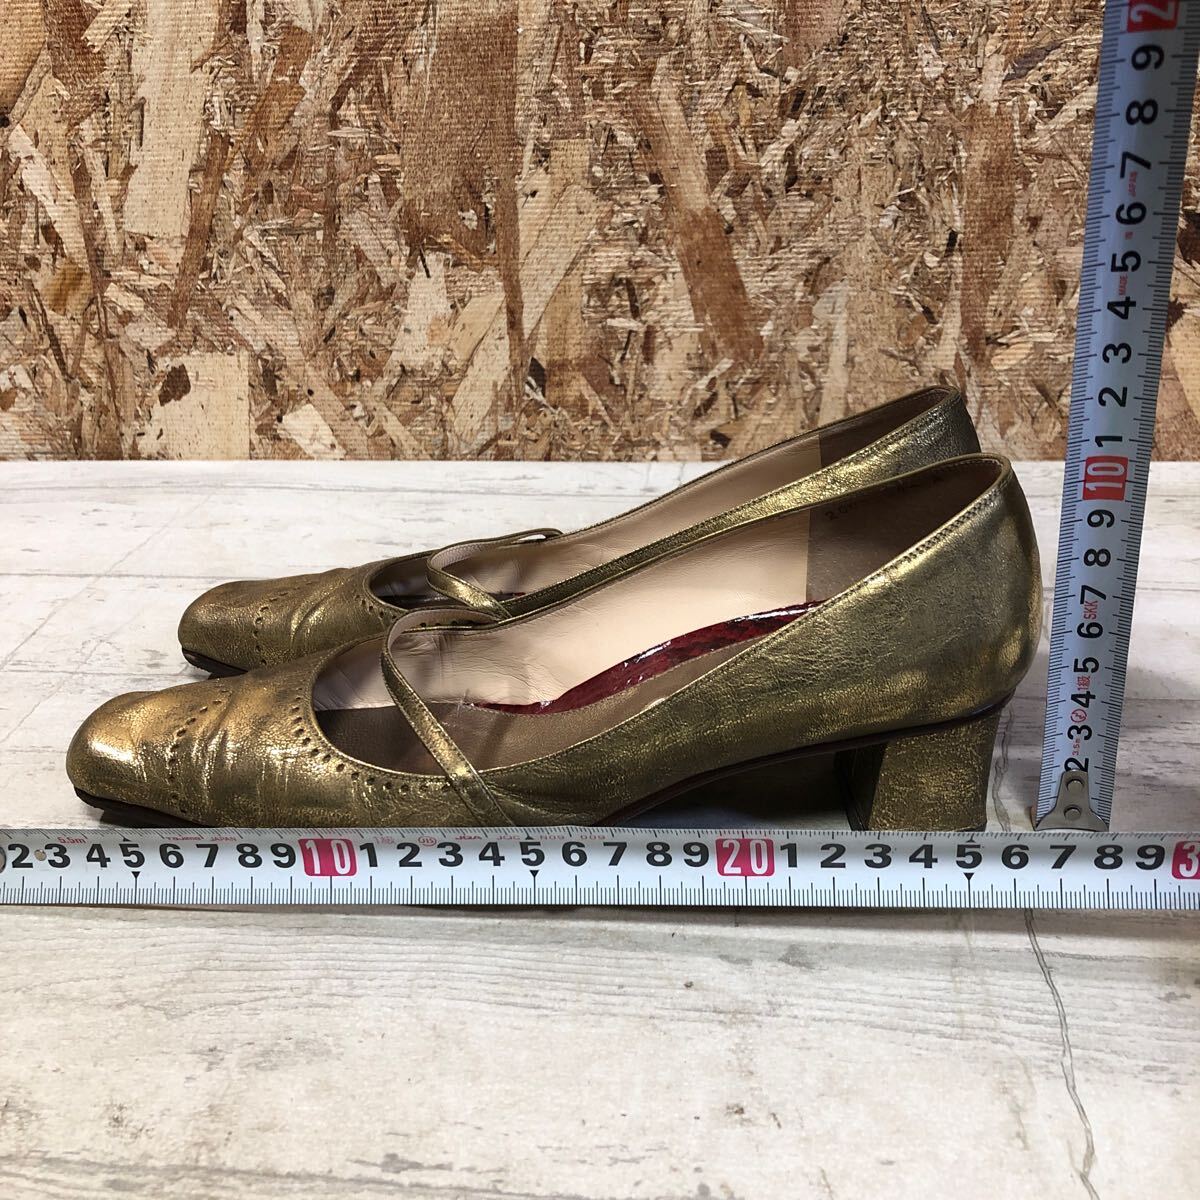 ANOTHER туфли-лодочки женский каблук Gold размер 37 сделано в Японии 24.0.? модный Sagawa Express соответствие .